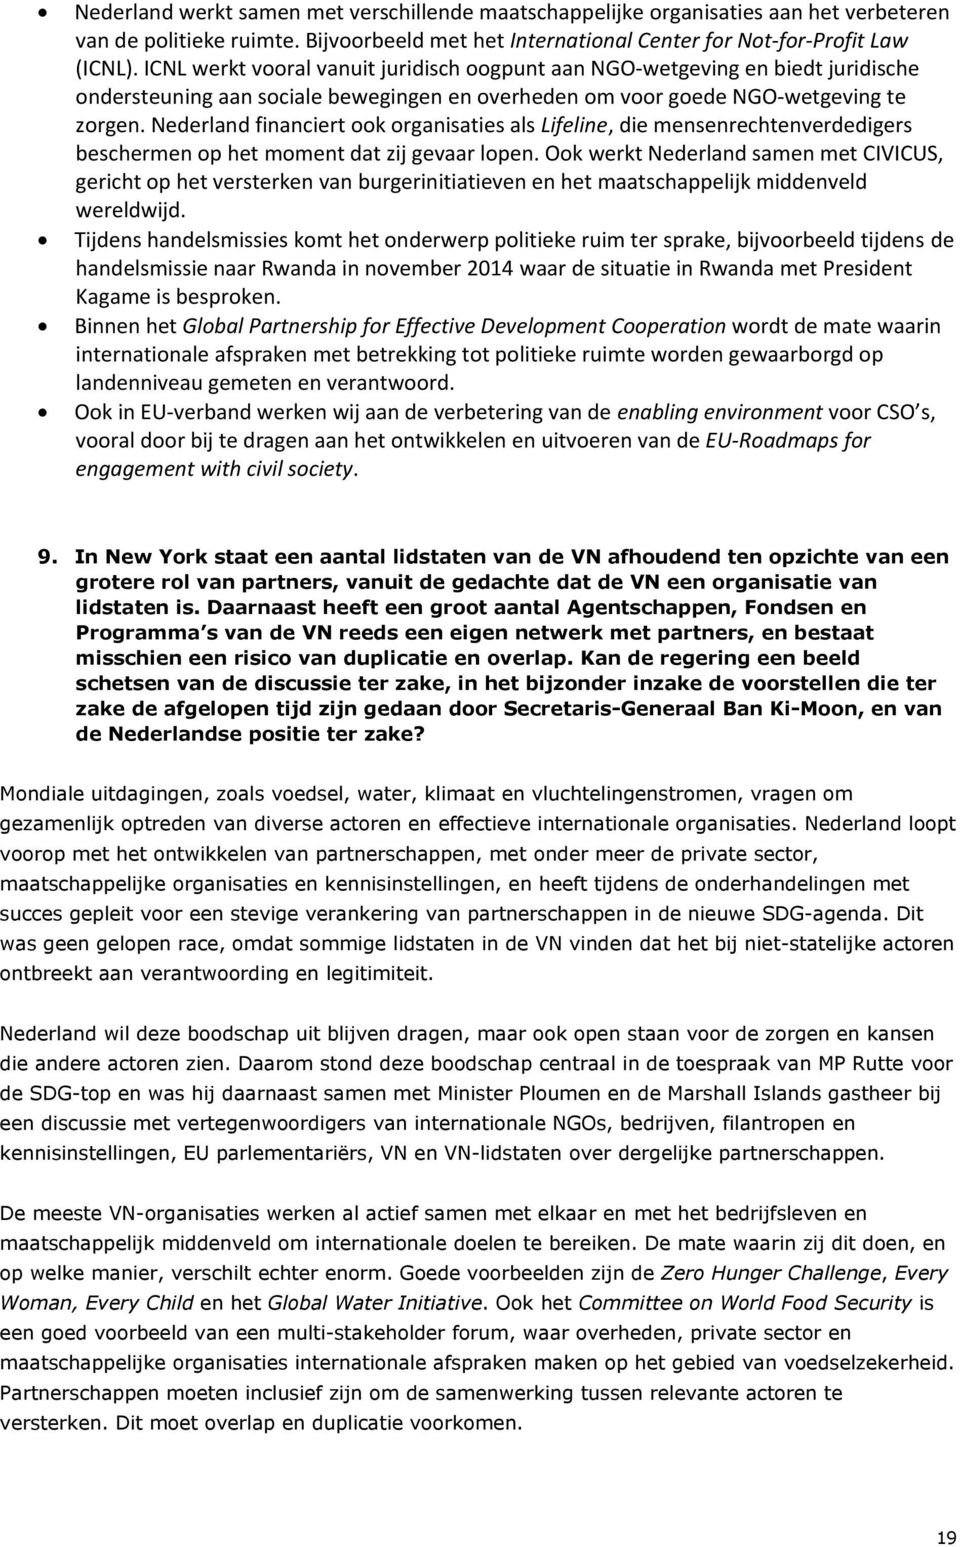 Nederland financiert ook organisaties als Lifeline, die mensenrechtenverdedigers beschermen op het moment dat zij gevaar lopen.